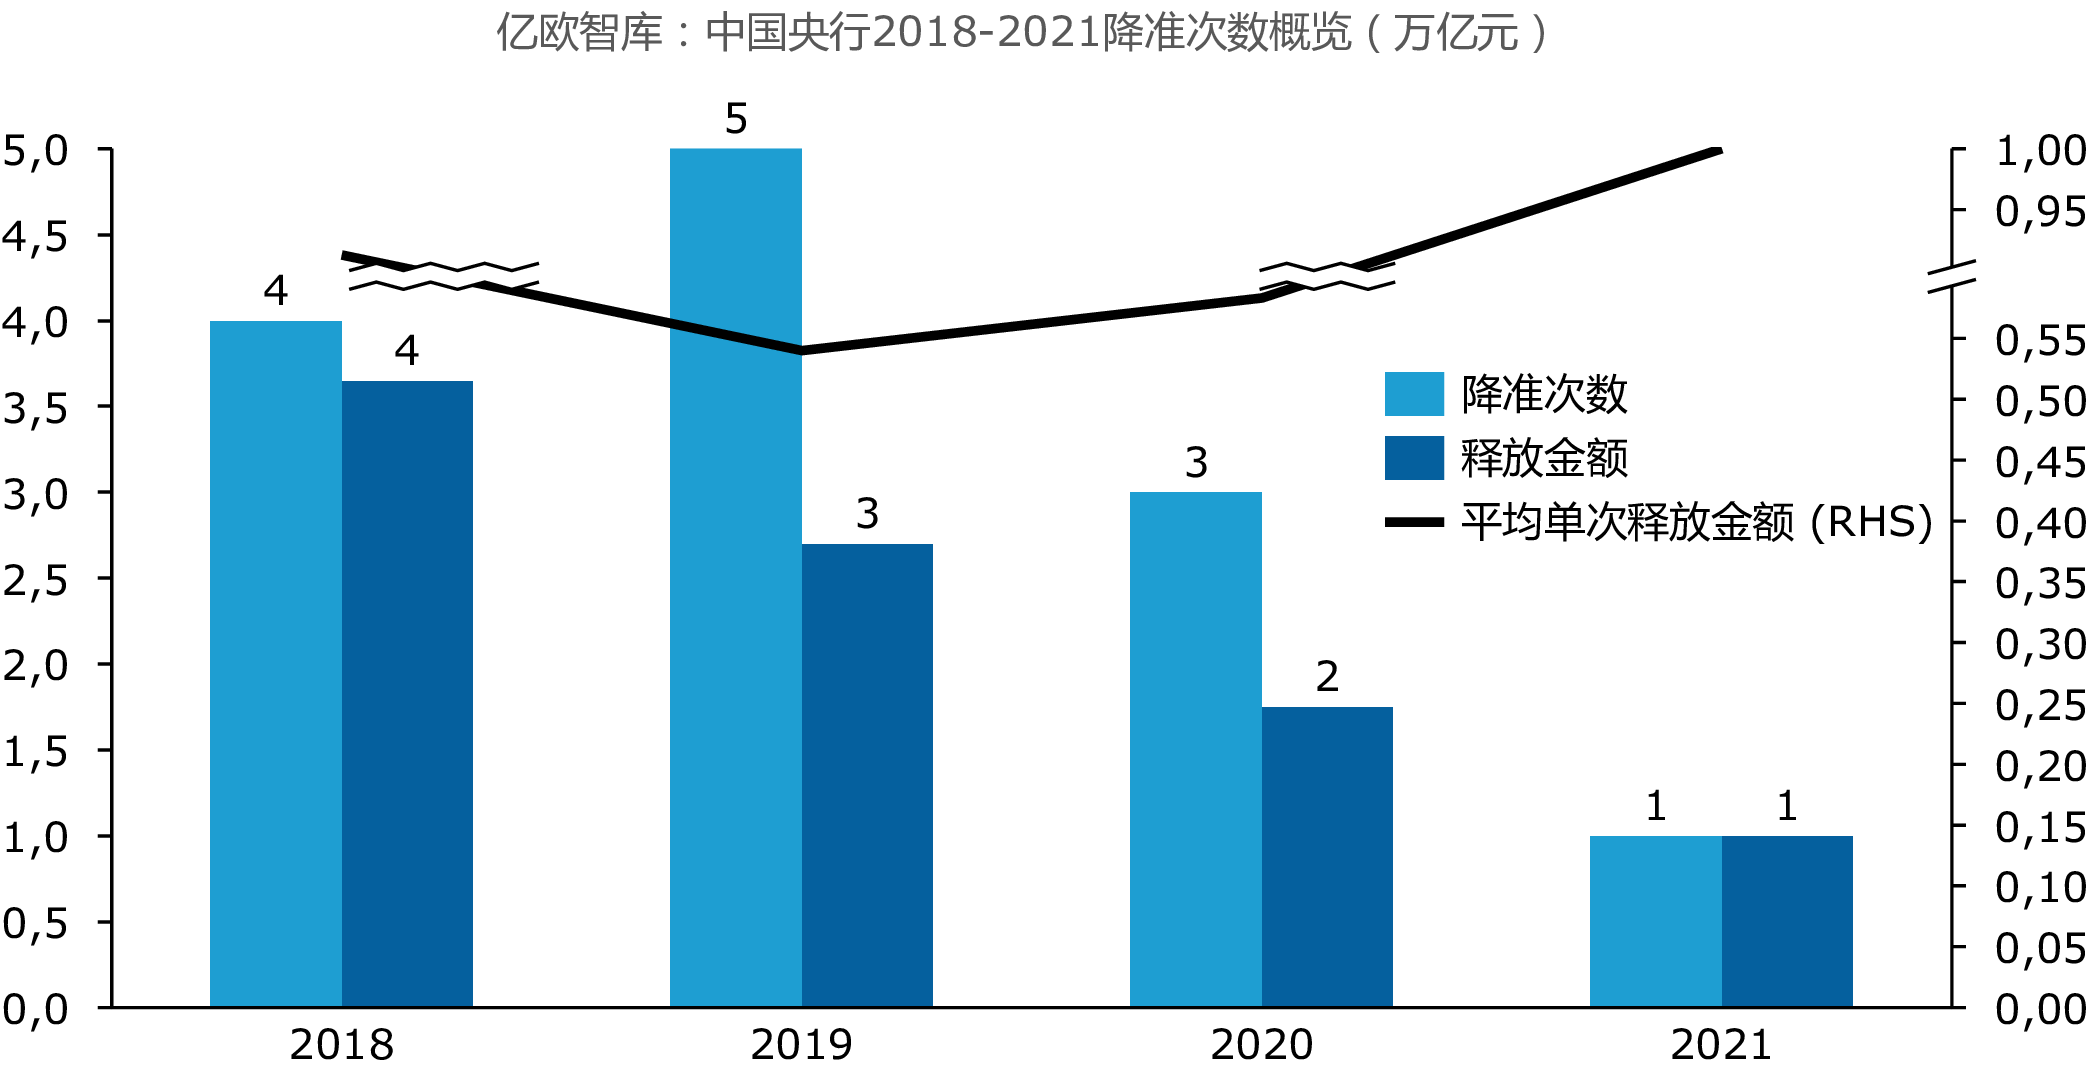 亿欧智库：中国央行2018-2021降准次数概览（万亿元）